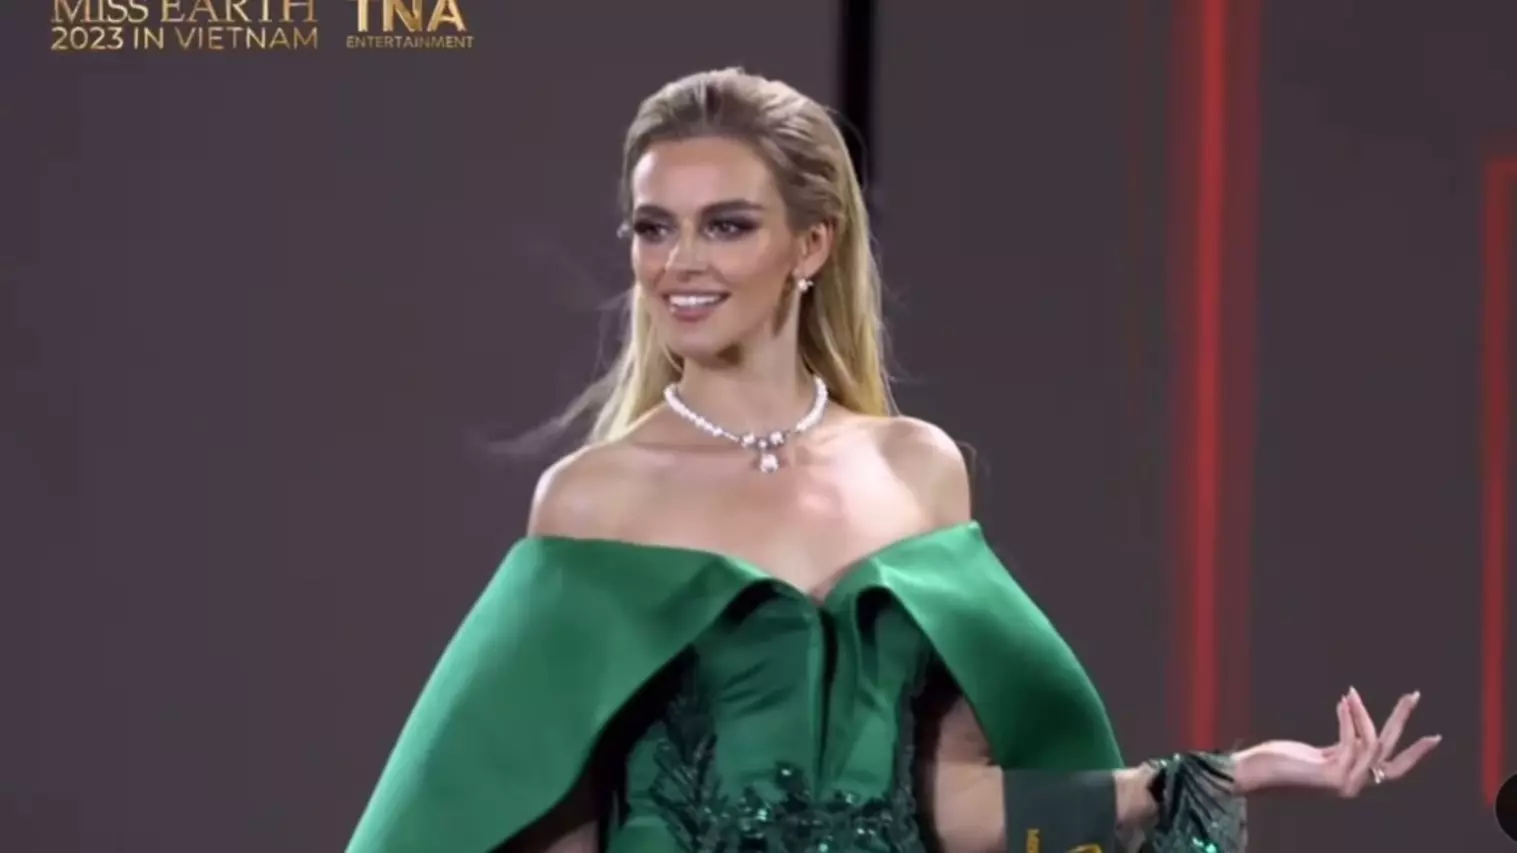 Нижегородка Дарья Луконькина выступила в финале «Мисс Земля-2023»